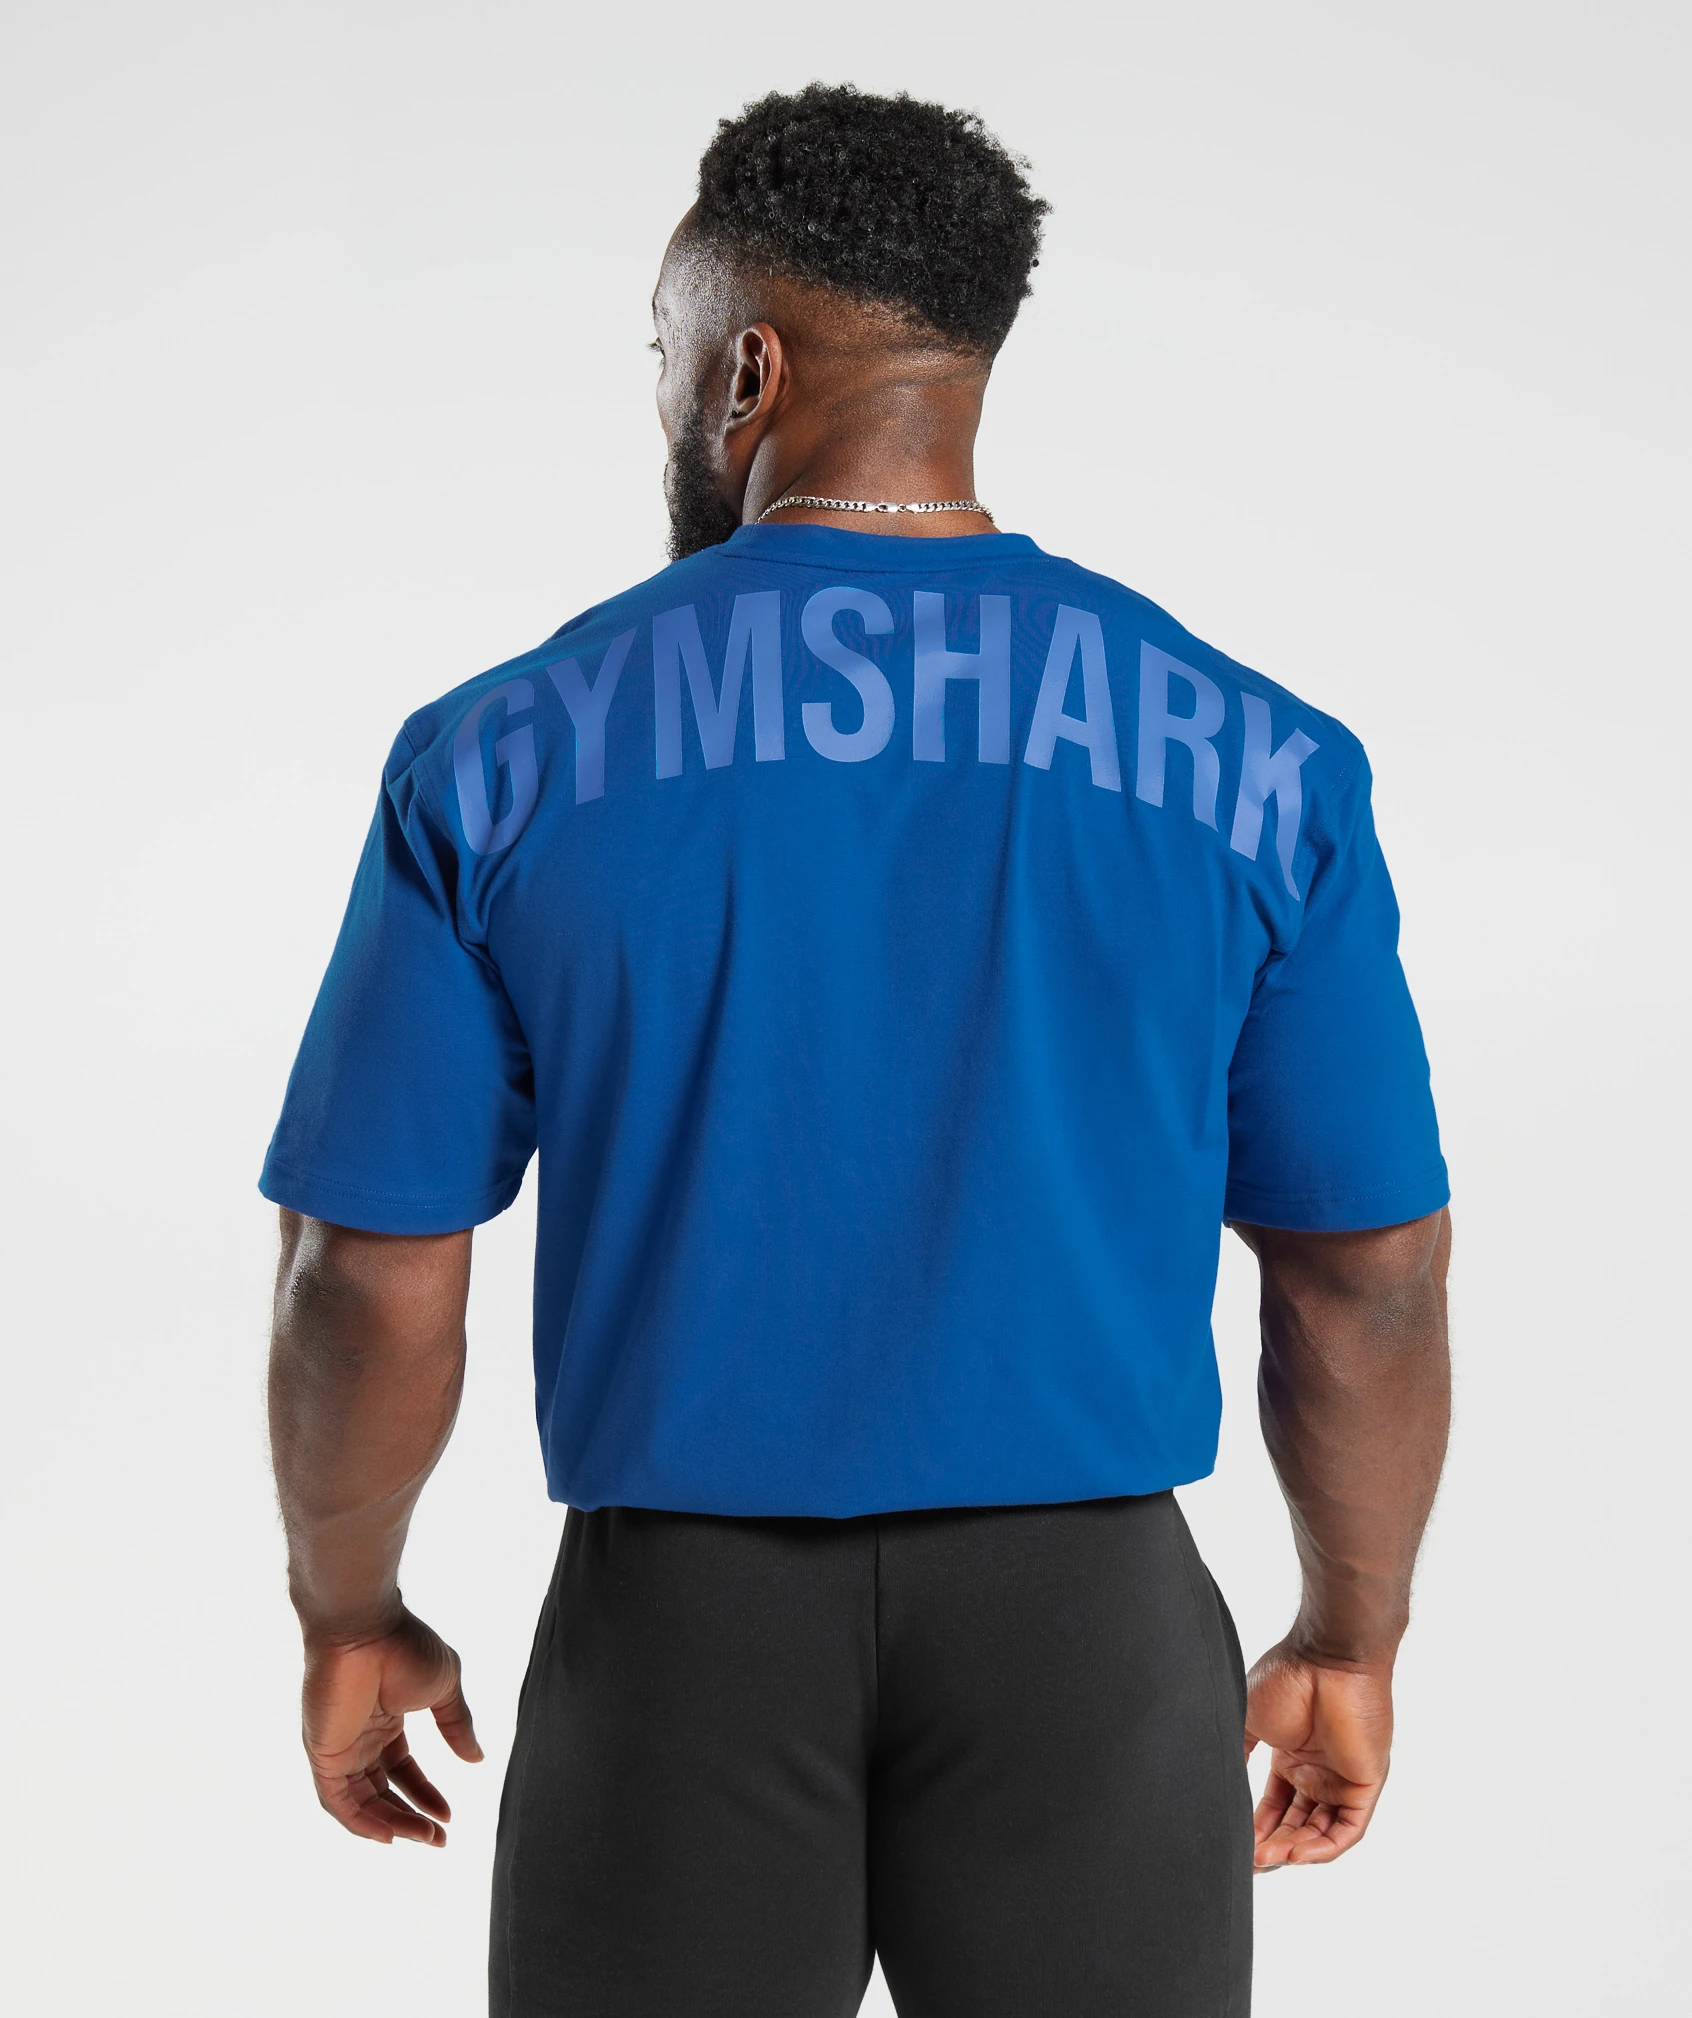 Gym Shark India - Gymshark T Shirt & Leggings India Online